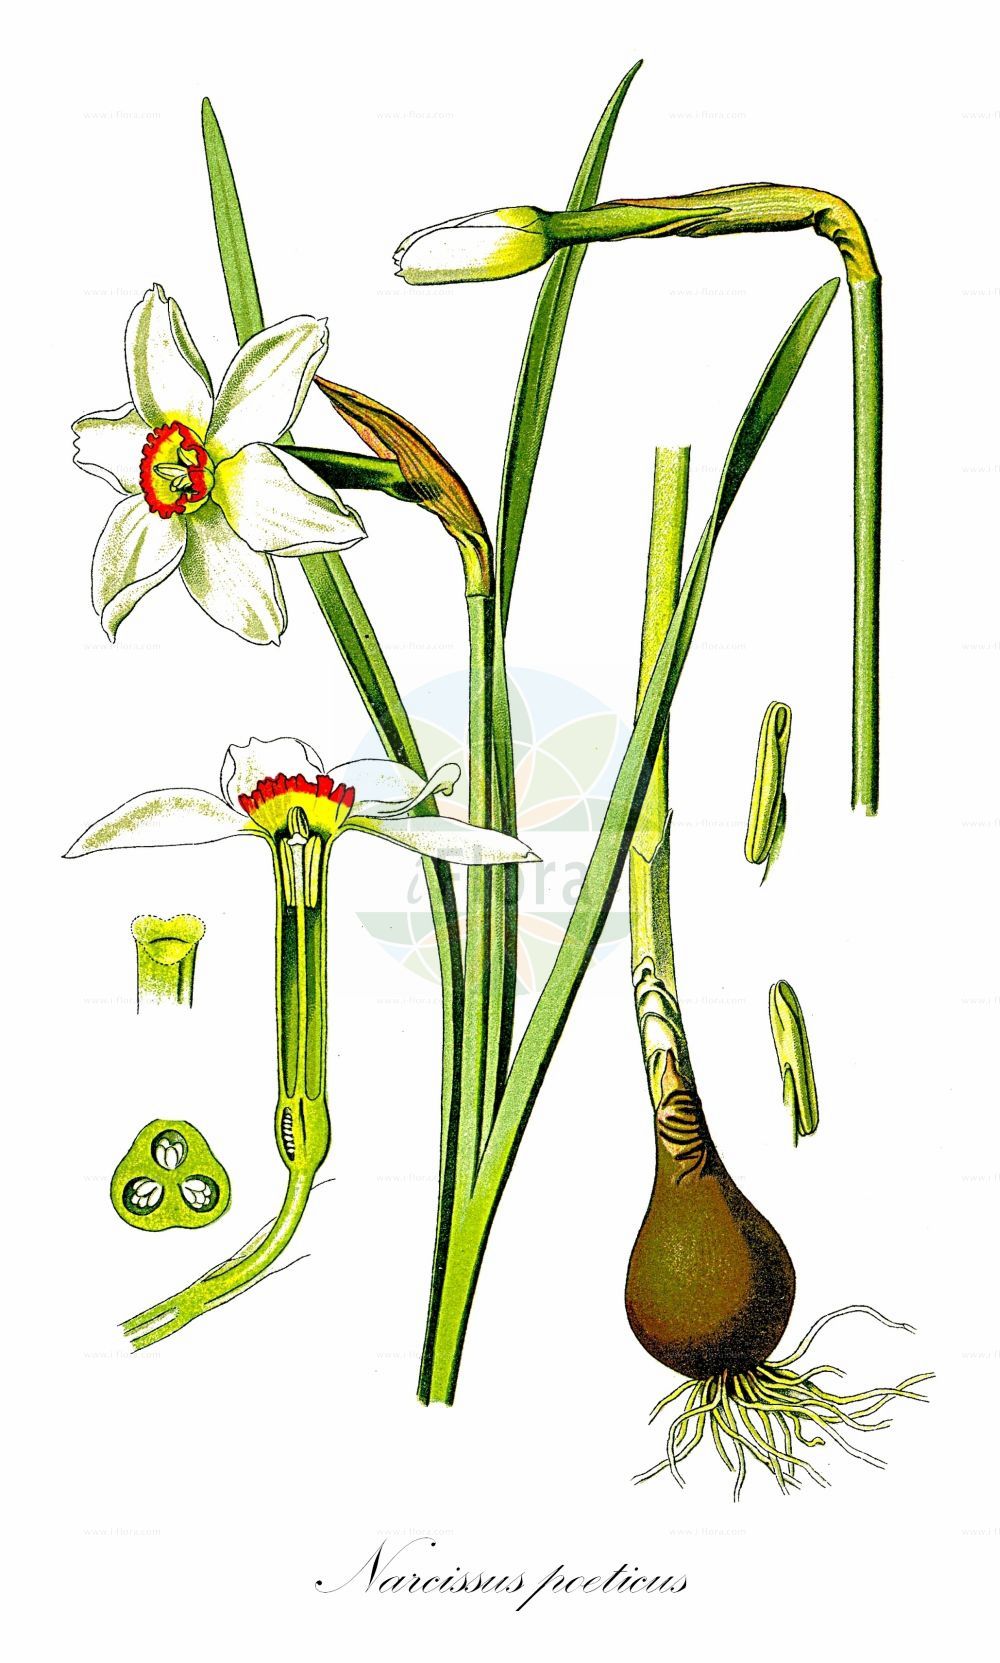 Historische Abbildung von Narcissus poeticus (Garten-Narzisse - Pheasant's-eye Daffodil). ---- Historical Drawing of Narcissus poeticus (Garten-Narzisse - Pheasant's-eye Daffodil).(Narcissus poeticus,Garten-Narzisse,Pheasant's-eye Daffodil,Autogenes poeticus,Narcissus poeticus,Garten-Narzisse,Weisse Narzisse,Pheasant's-eye Daffodil,Daffodil,Pheasant's Eye Narcissus,Poet's Narcissus,White Daffodil,Narcissus,Narzisse,Daffodils,Amaryllidaceae,Narzissengewächse,Amaryllis family,Thomé (1885))